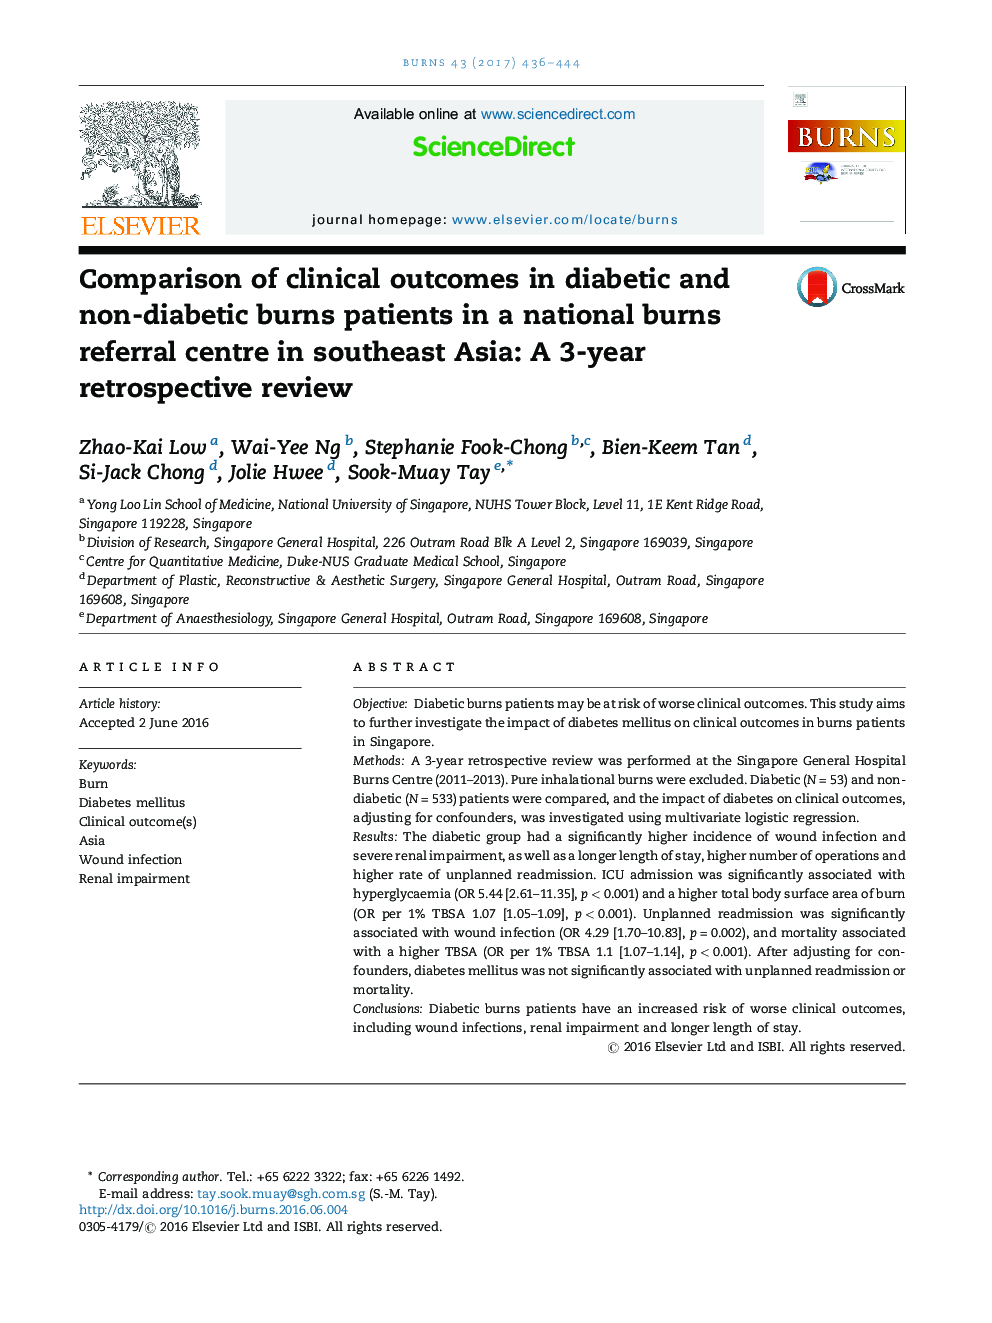 مقایسه نتایج بالینی بیماران دیابتی و سوختگی غیر دیابتی در مرکز سوختگی ملی در جنوب شرقی آسیا: بررسی گذشته نگر 3 ساله 